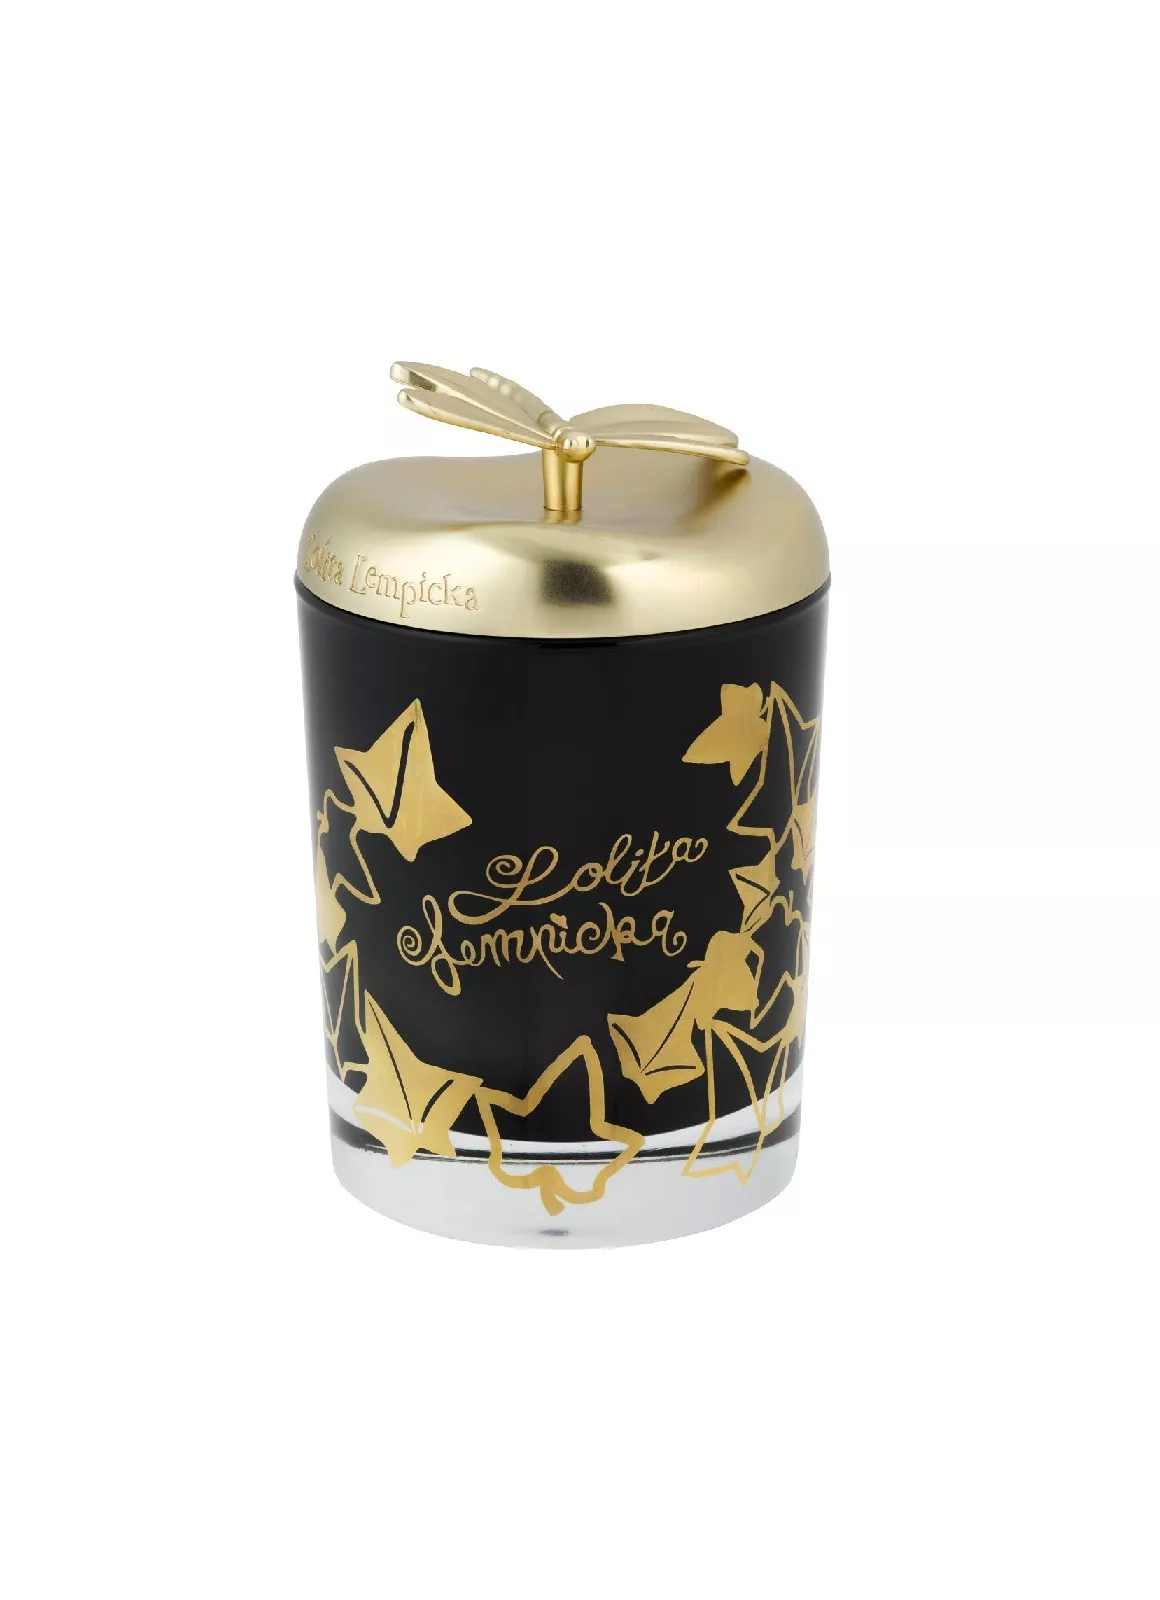 Свеча ароматизированная Maison Berger Paris Lolita Lempicka Black, вес 240 г (6372) - Фото nav 2